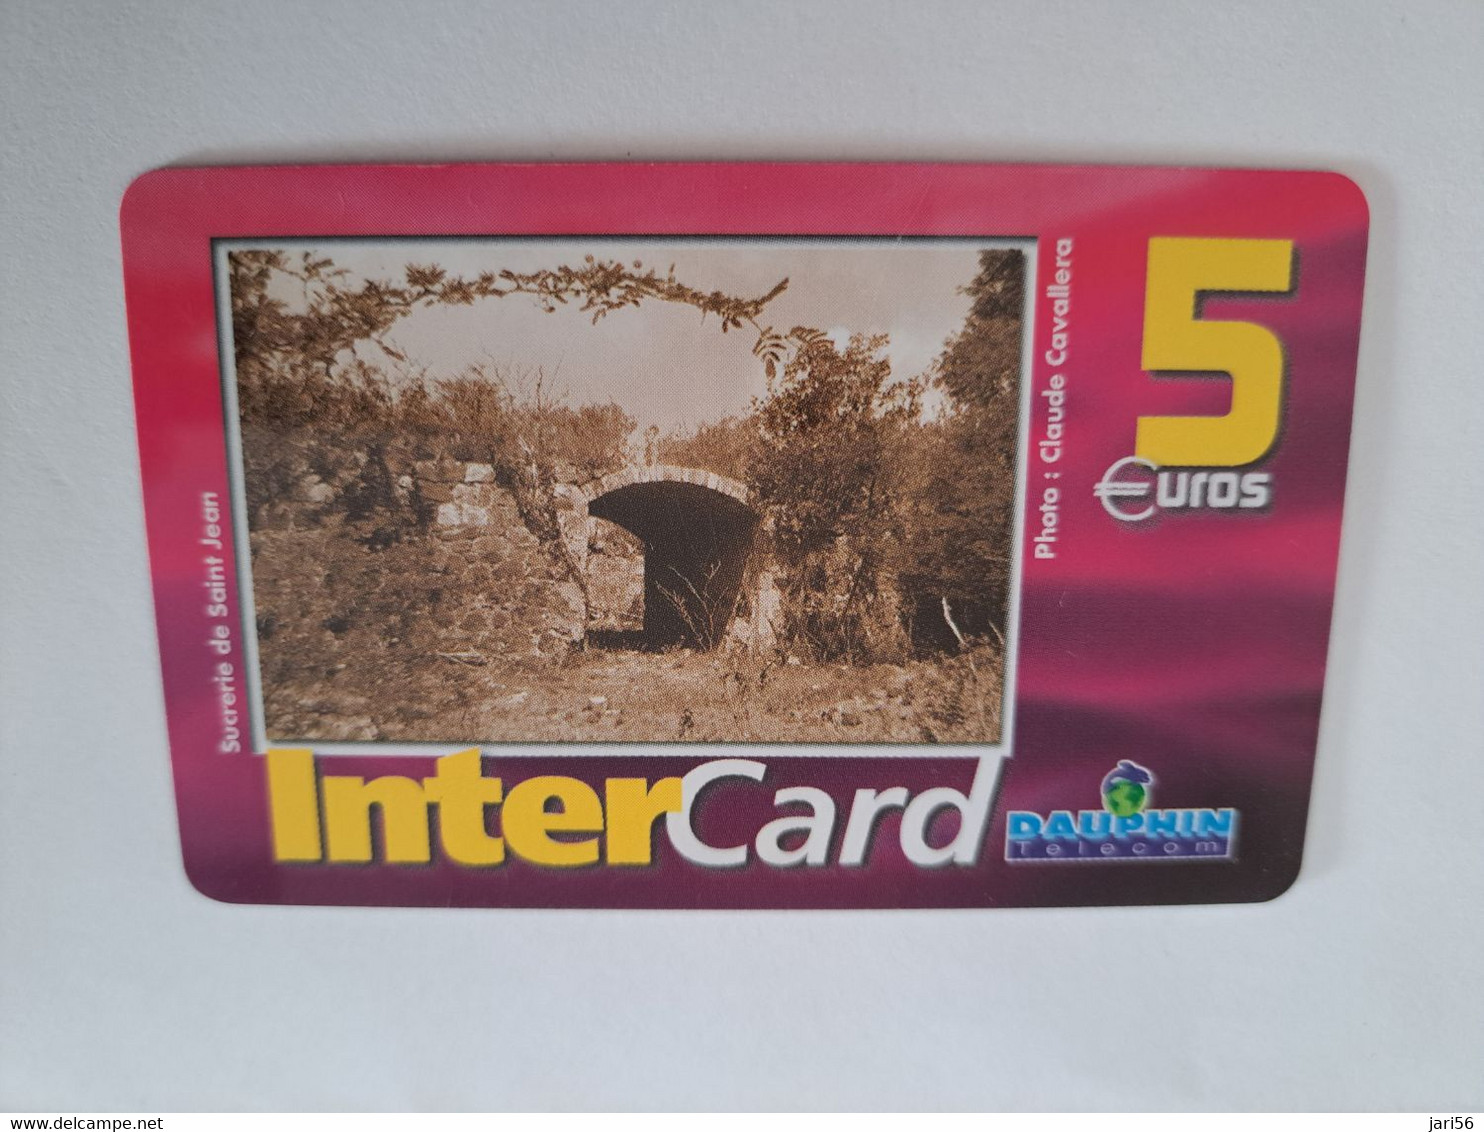 ST MARTIN / INTERCARD  5 EURO  SUCRERIE DE SAINT JEAN           NO 105 Fine Used Card    ** 10910** - Antilles (Françaises)